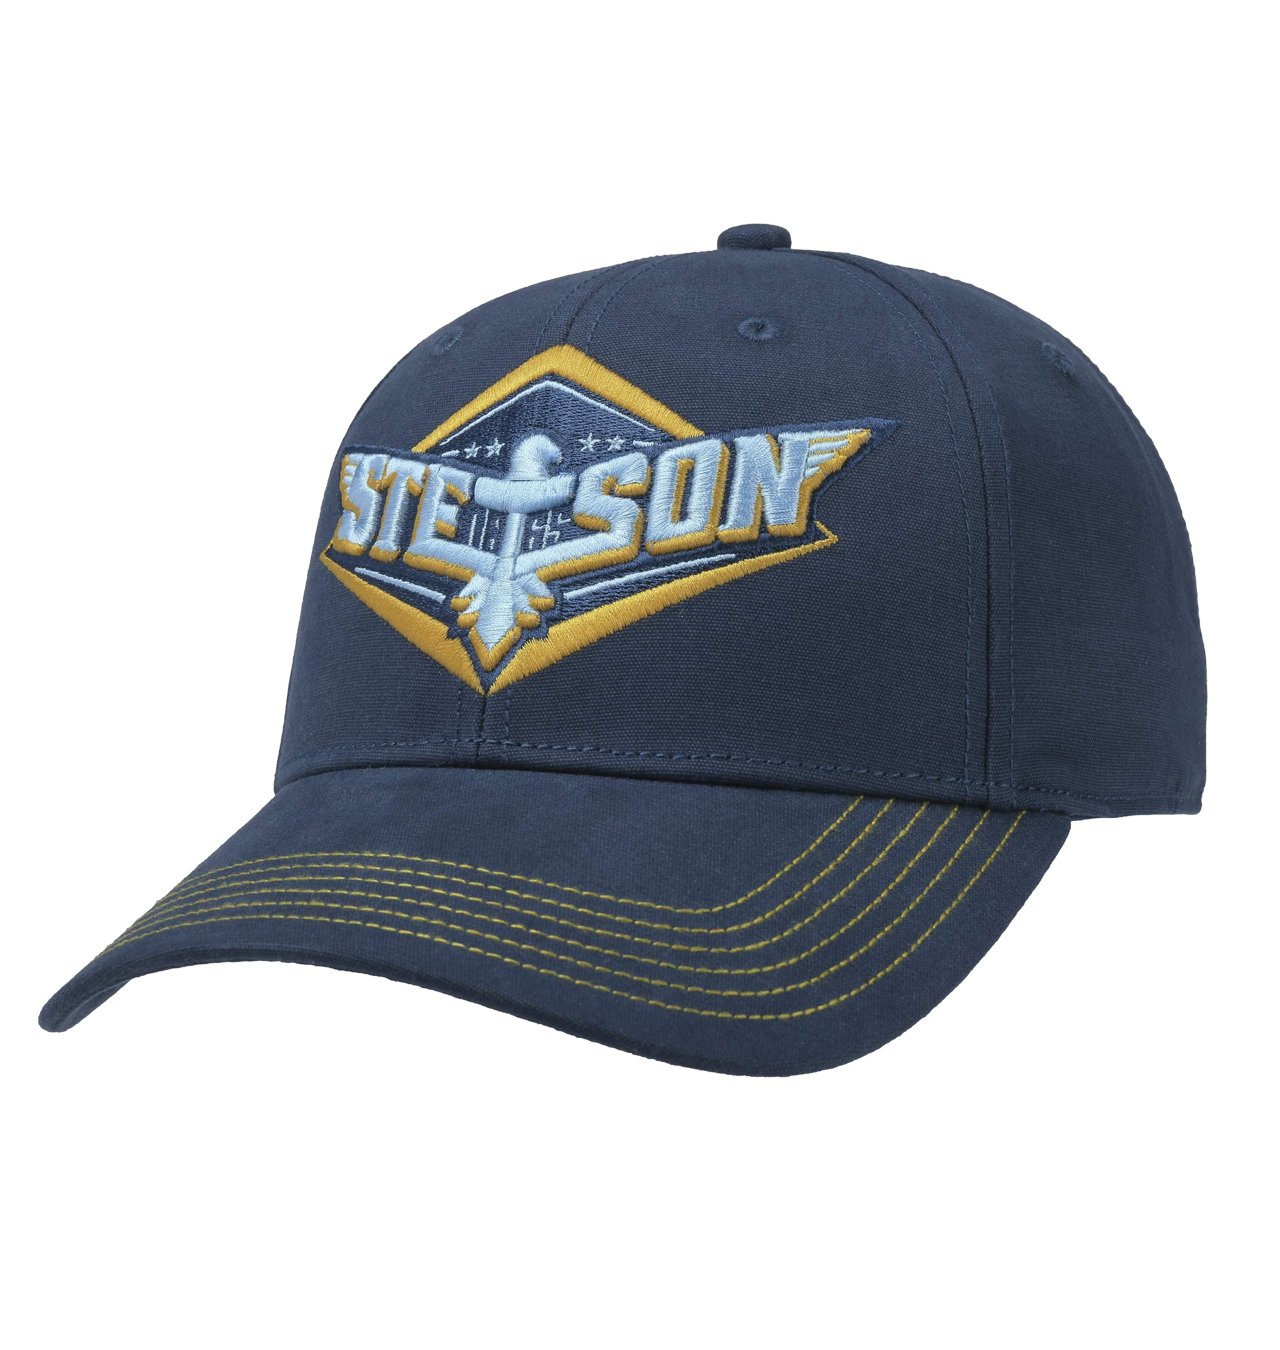 Stetson - Eagle Baseball Cap - Navy